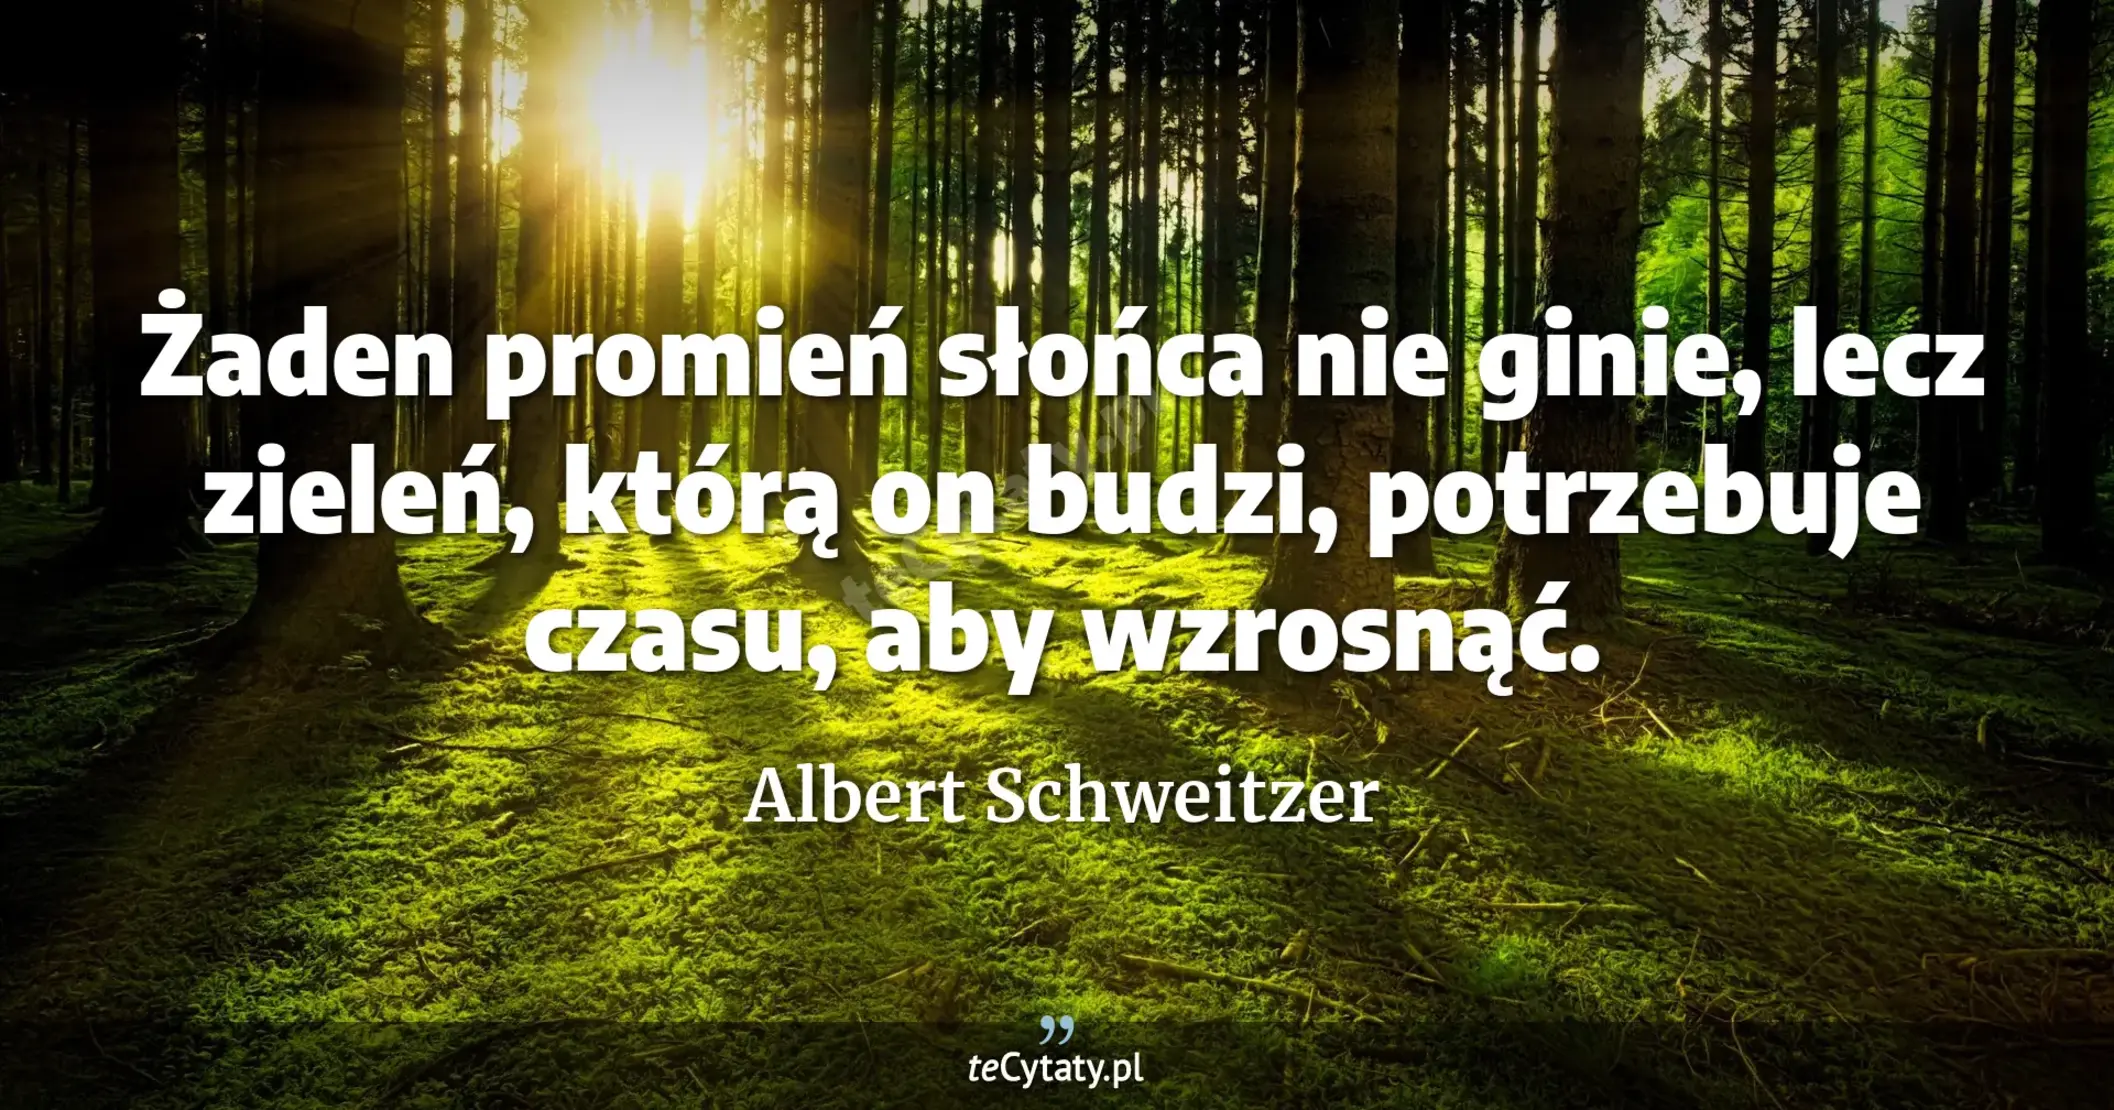 Żaden promień słońca nie ginie, lecz zieleń, którą on budzi, potrzebuje czasu, aby wzrosnąć. - Albert Schweitzer